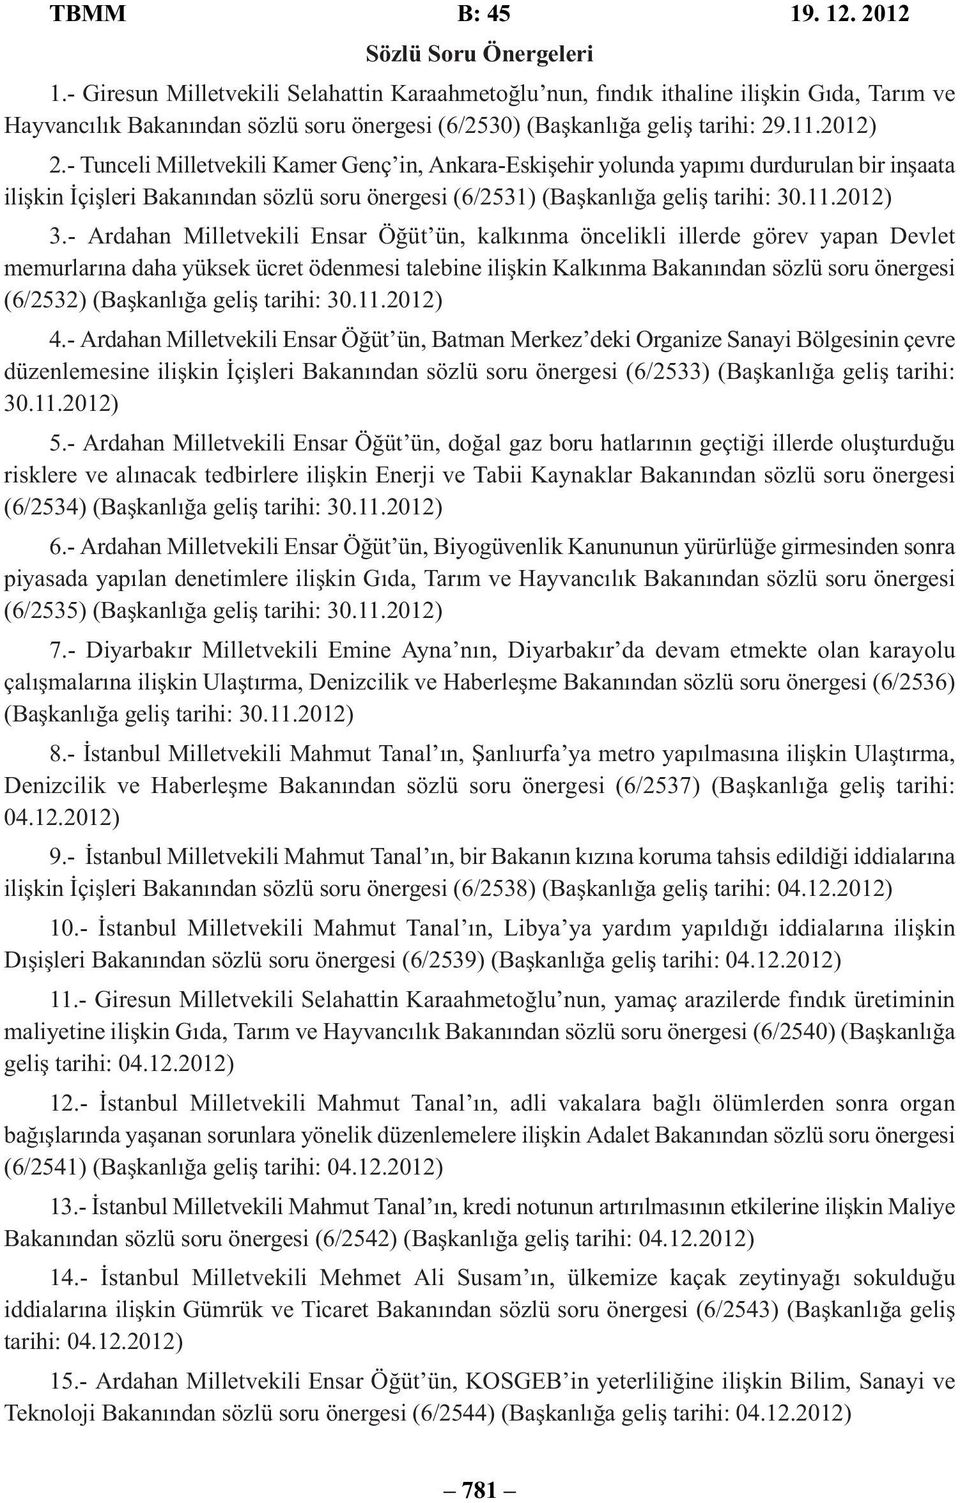 - Tunceli Milletvekili Kamer Genç in, Ankara-Eskişehir yolunda yapımı durdurulan bir inşaata ilişkin İçişleri Bakanından sözlü soru önergesi (6/2531) (Başkanlığa geliş tarihi: 30.11.2012) 3.